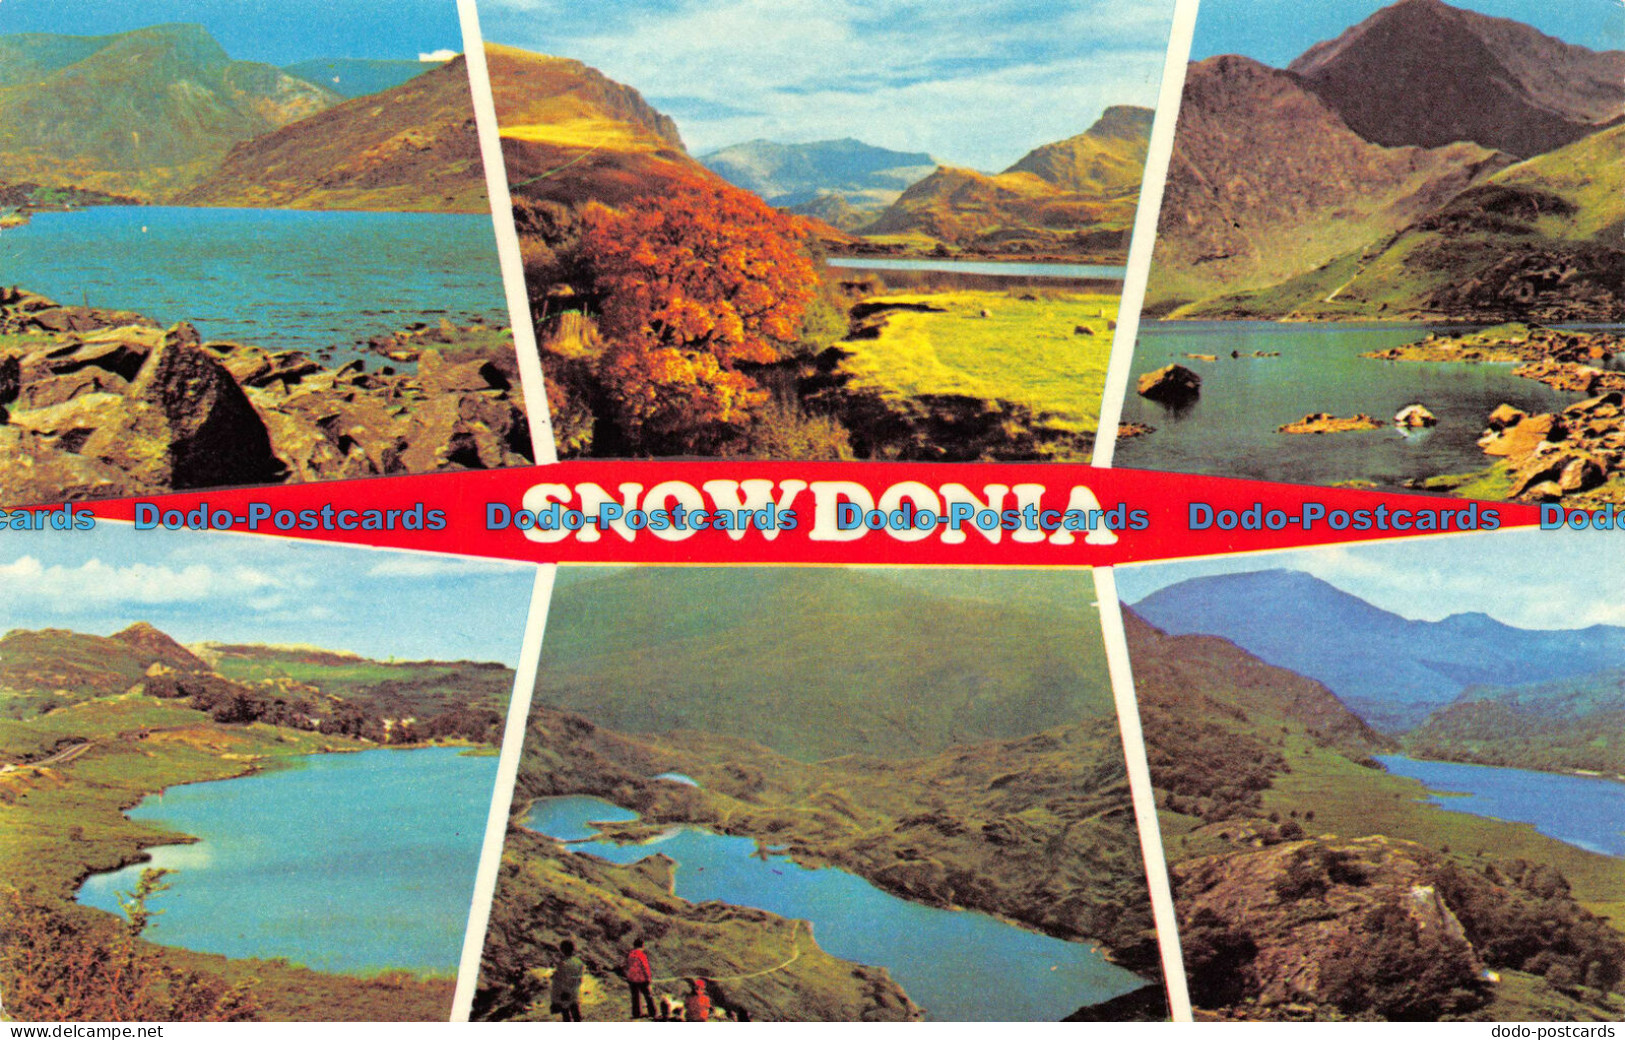 R069127 Snowdonia. Multi View. Photo Precision. 1985 - Monde